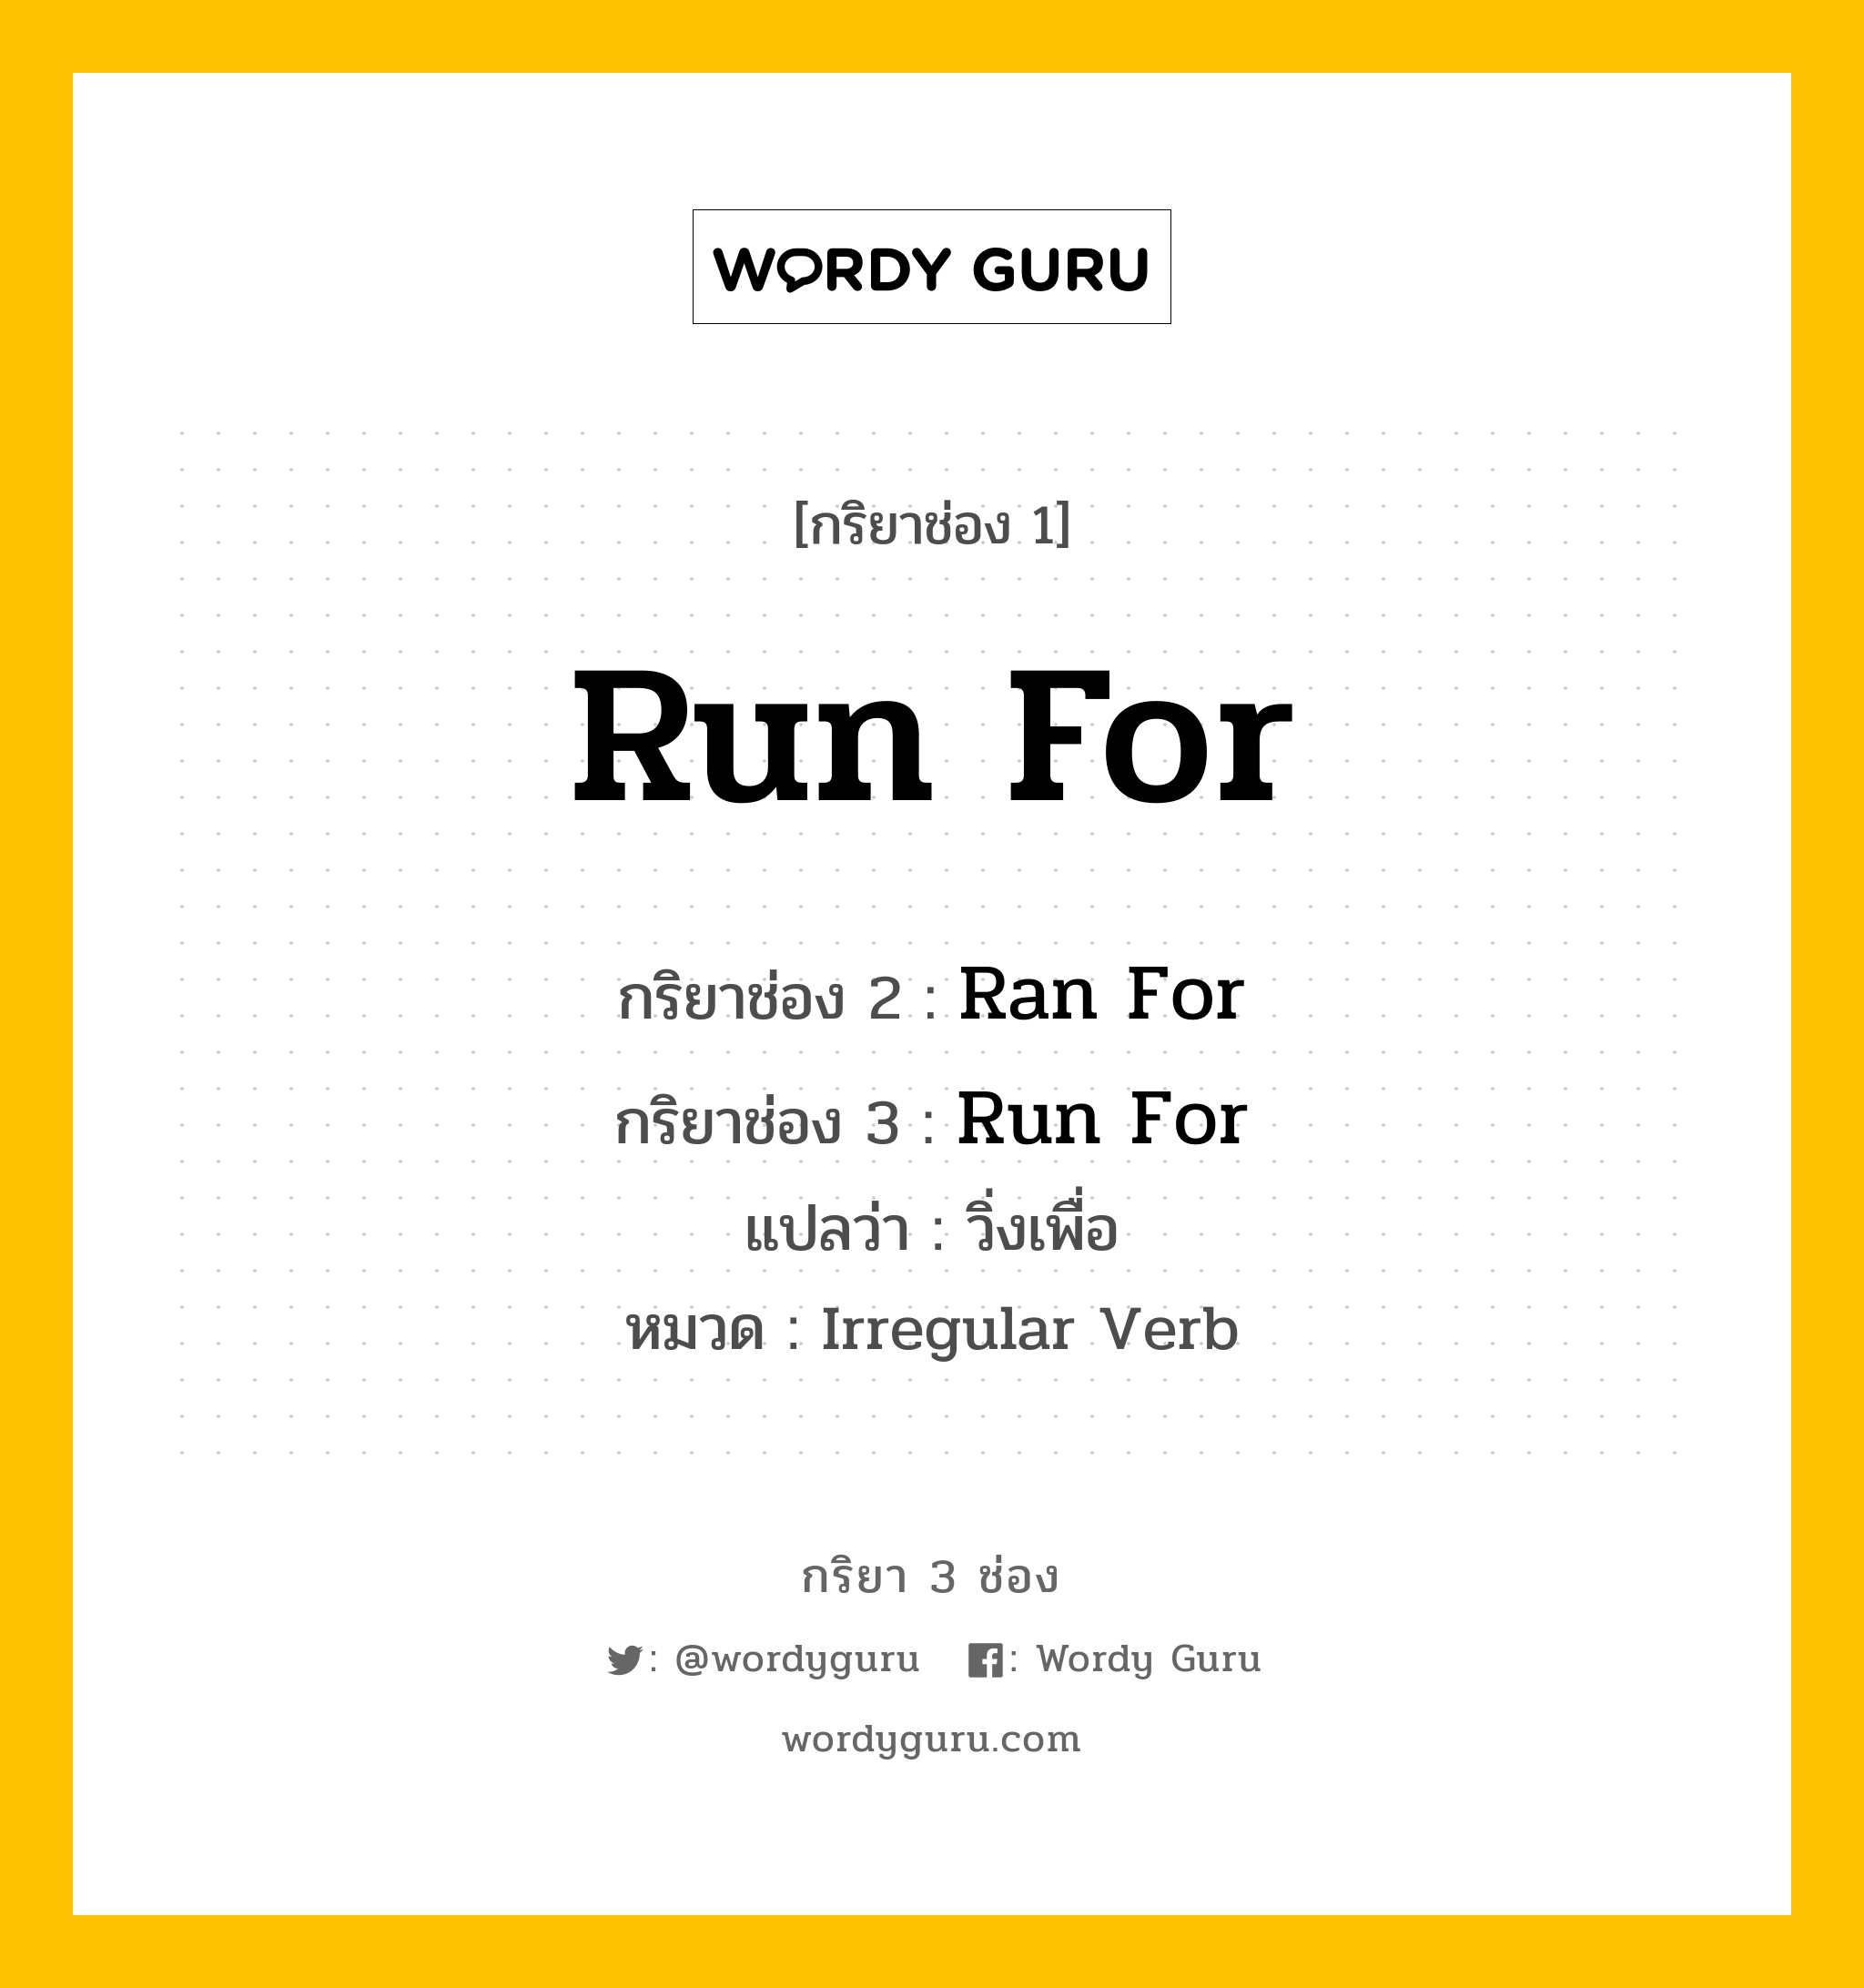 กริยา 3 ช่อง: Run For ช่อง 2 Run For ช่อง 3 คืออะไร, กริยาช่อง 1 Run For กริยาช่อง 2 Ran For กริยาช่อง 3 Run For แปลว่า วิ่งเพื่อ หมวด Irregular Verb หมวด Irregular Verb